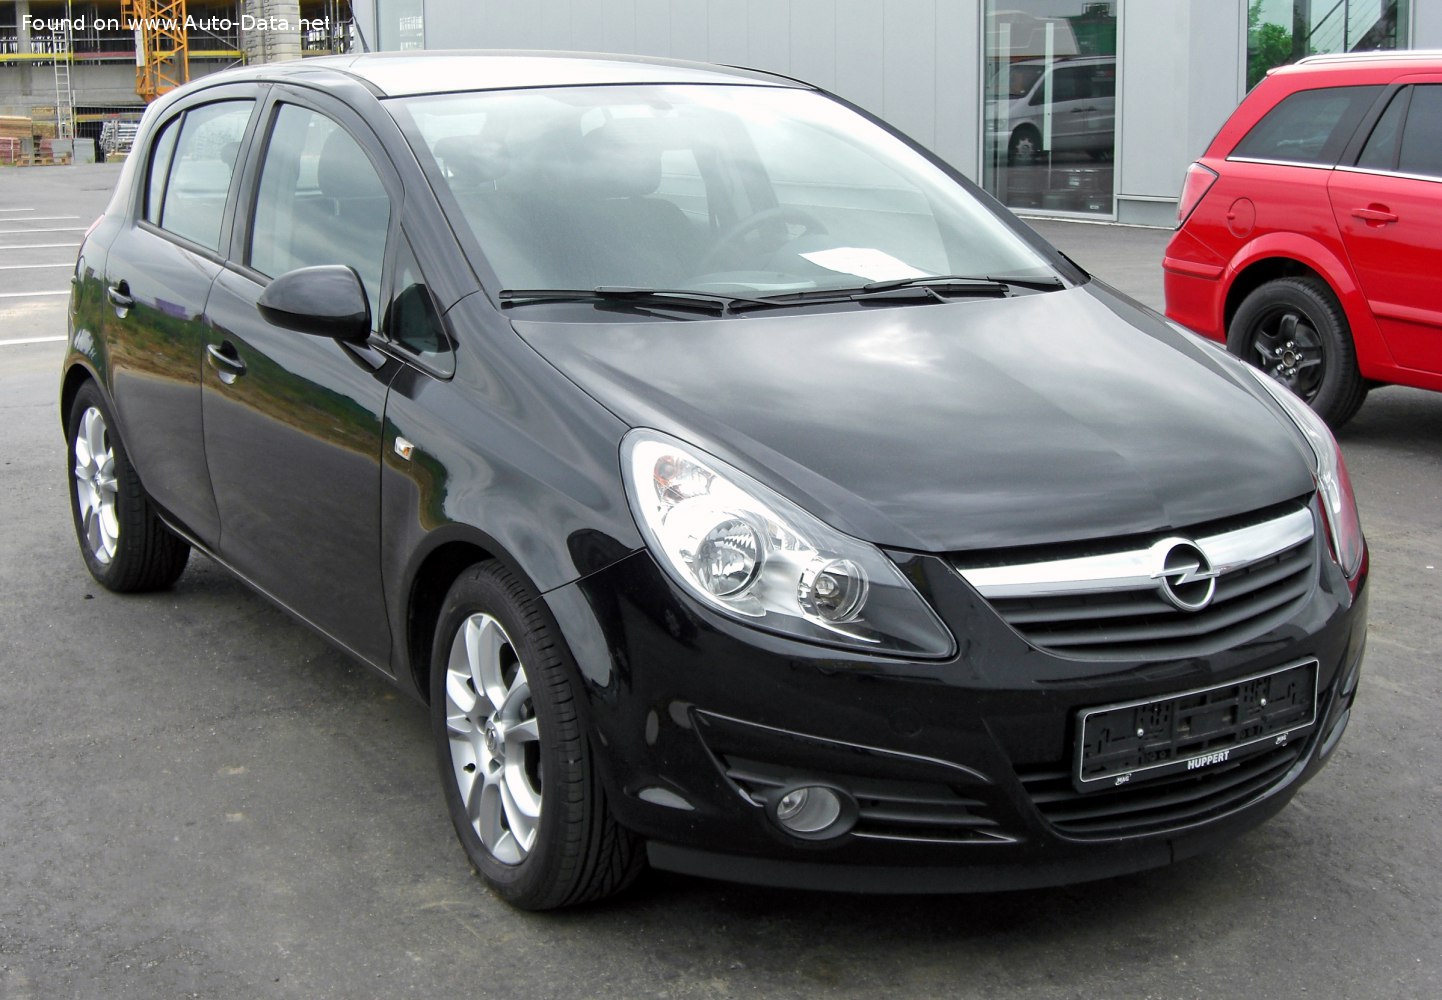 https://www.auto-data.net/images/f109/Opel-Corsa-D-5-door.jpg